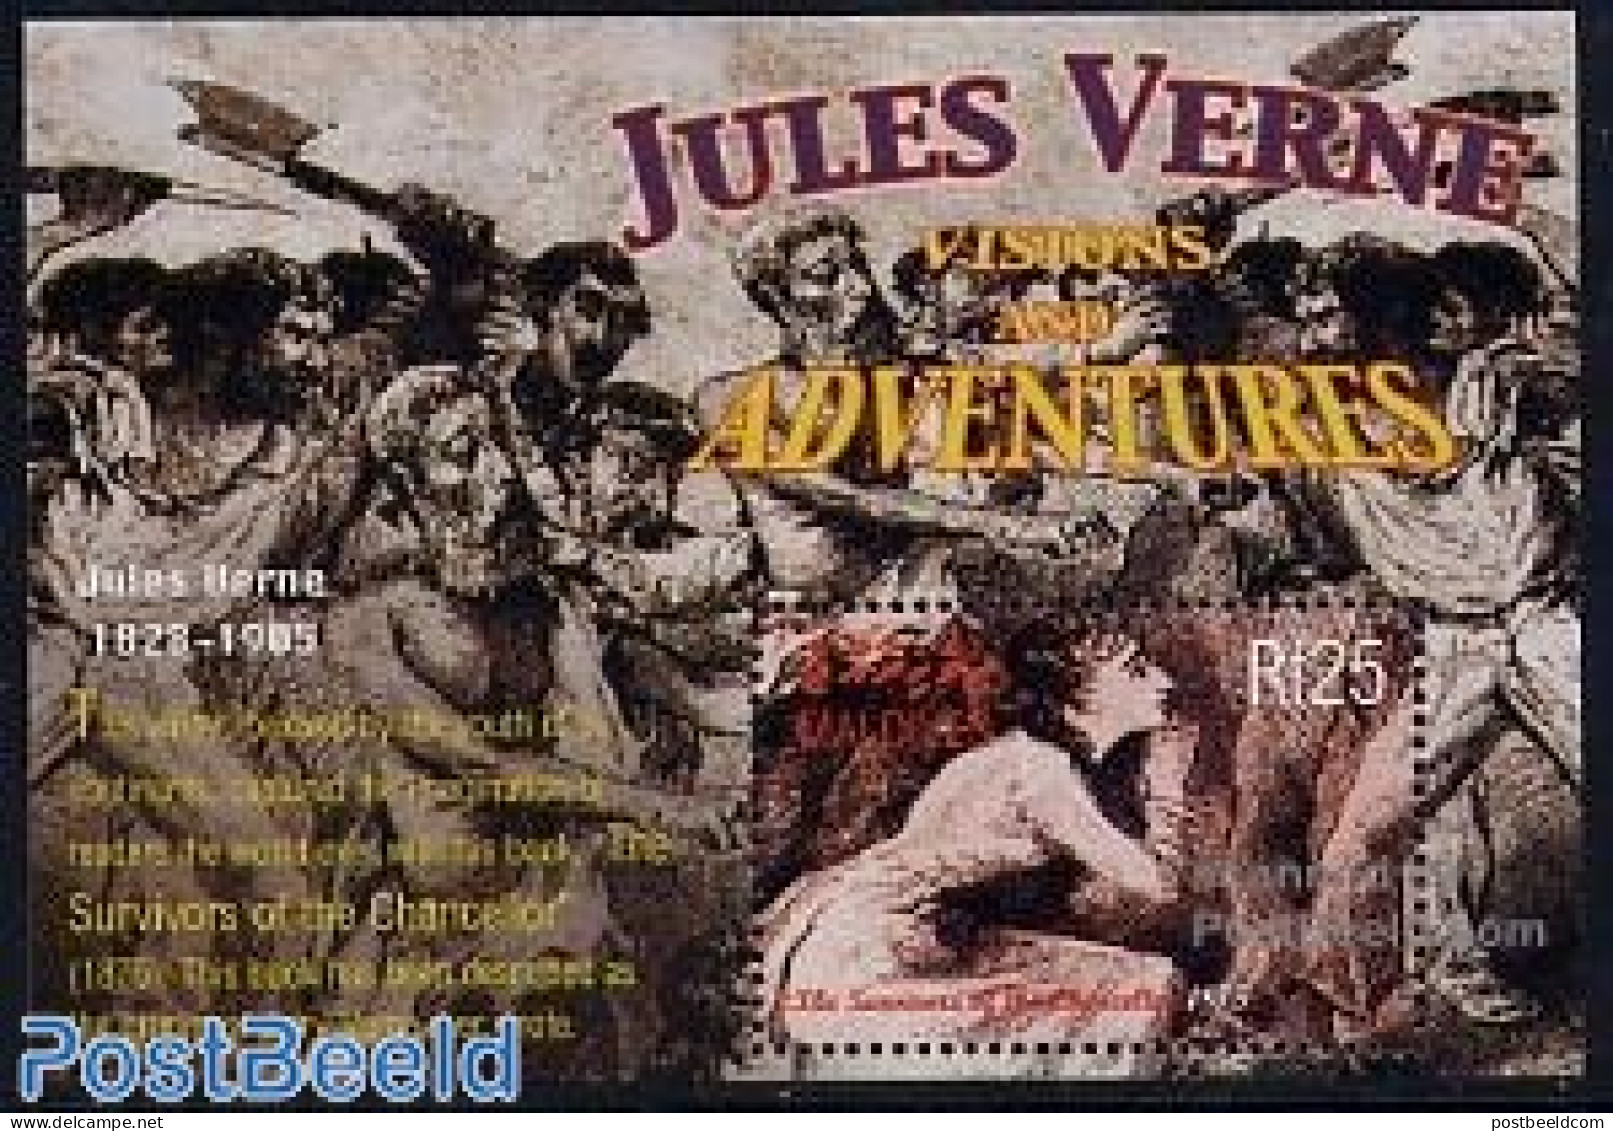 Maldives 2004 Jules Verne S/s, Survivers Of The Chancellor, Mint NH, Art - Jules Verne - Science Fiction - Non Classés